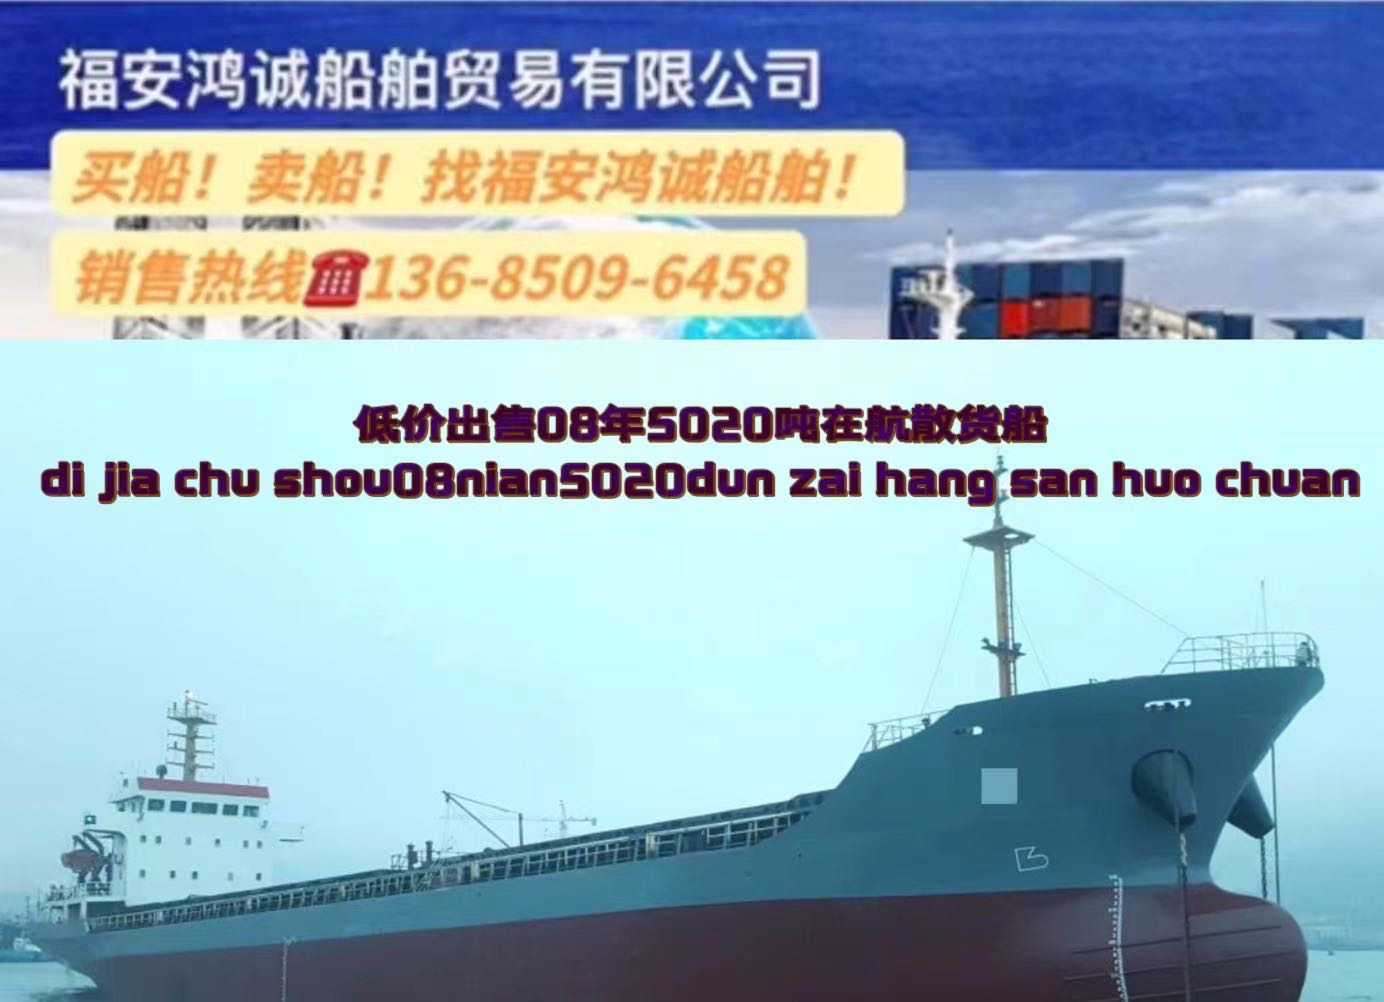 低价出卖：5020吨正在航集货船 2008年11月浙江台州制作 祸建 ...-2.jpg